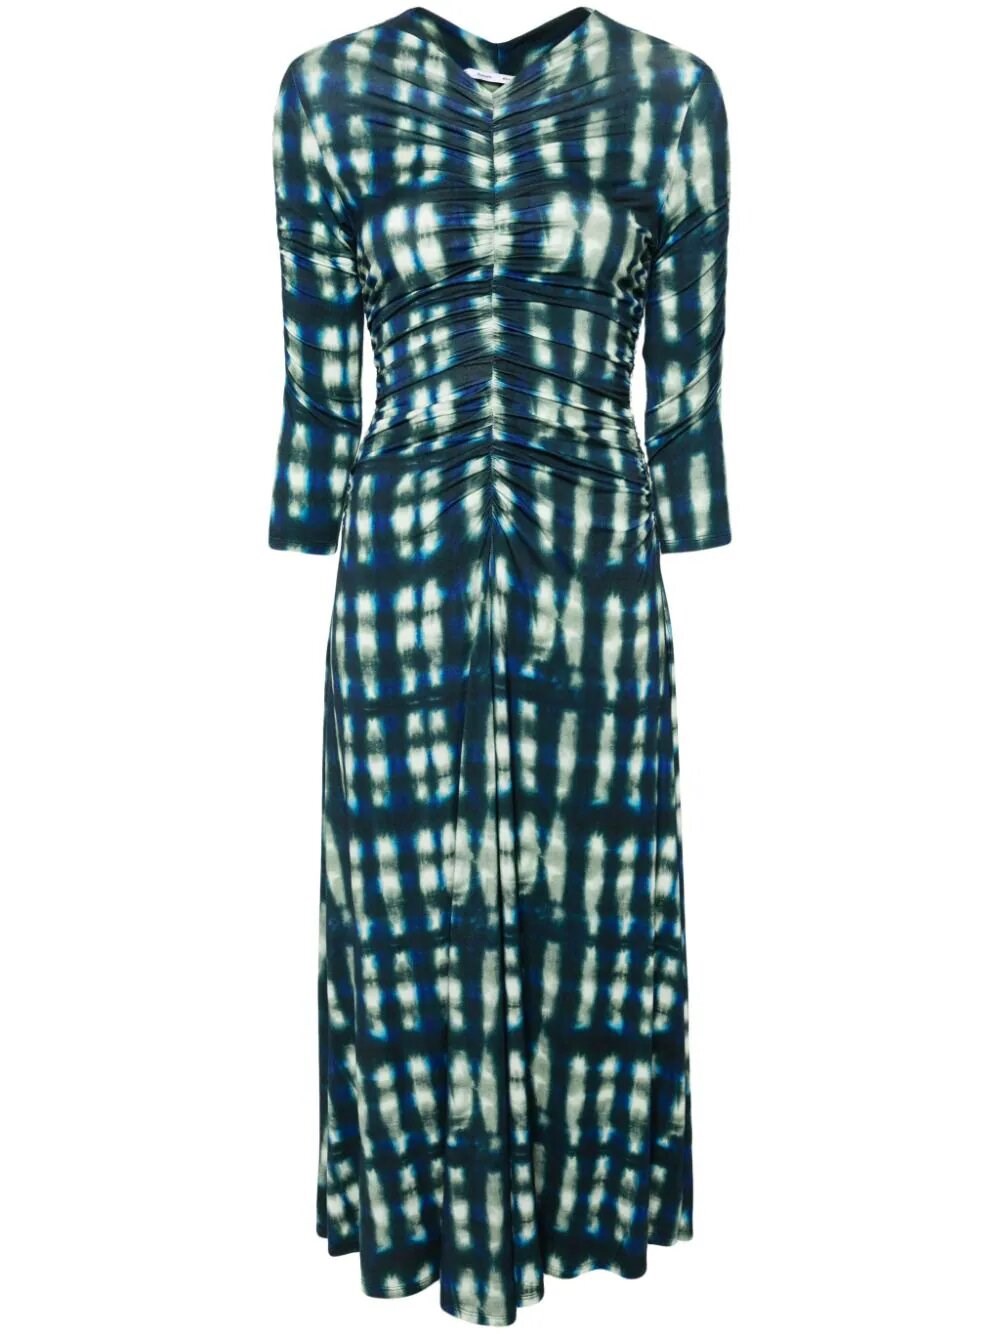 Proenza Schouler White Label Natalee Dress In Tie Dye Jersey In Blue